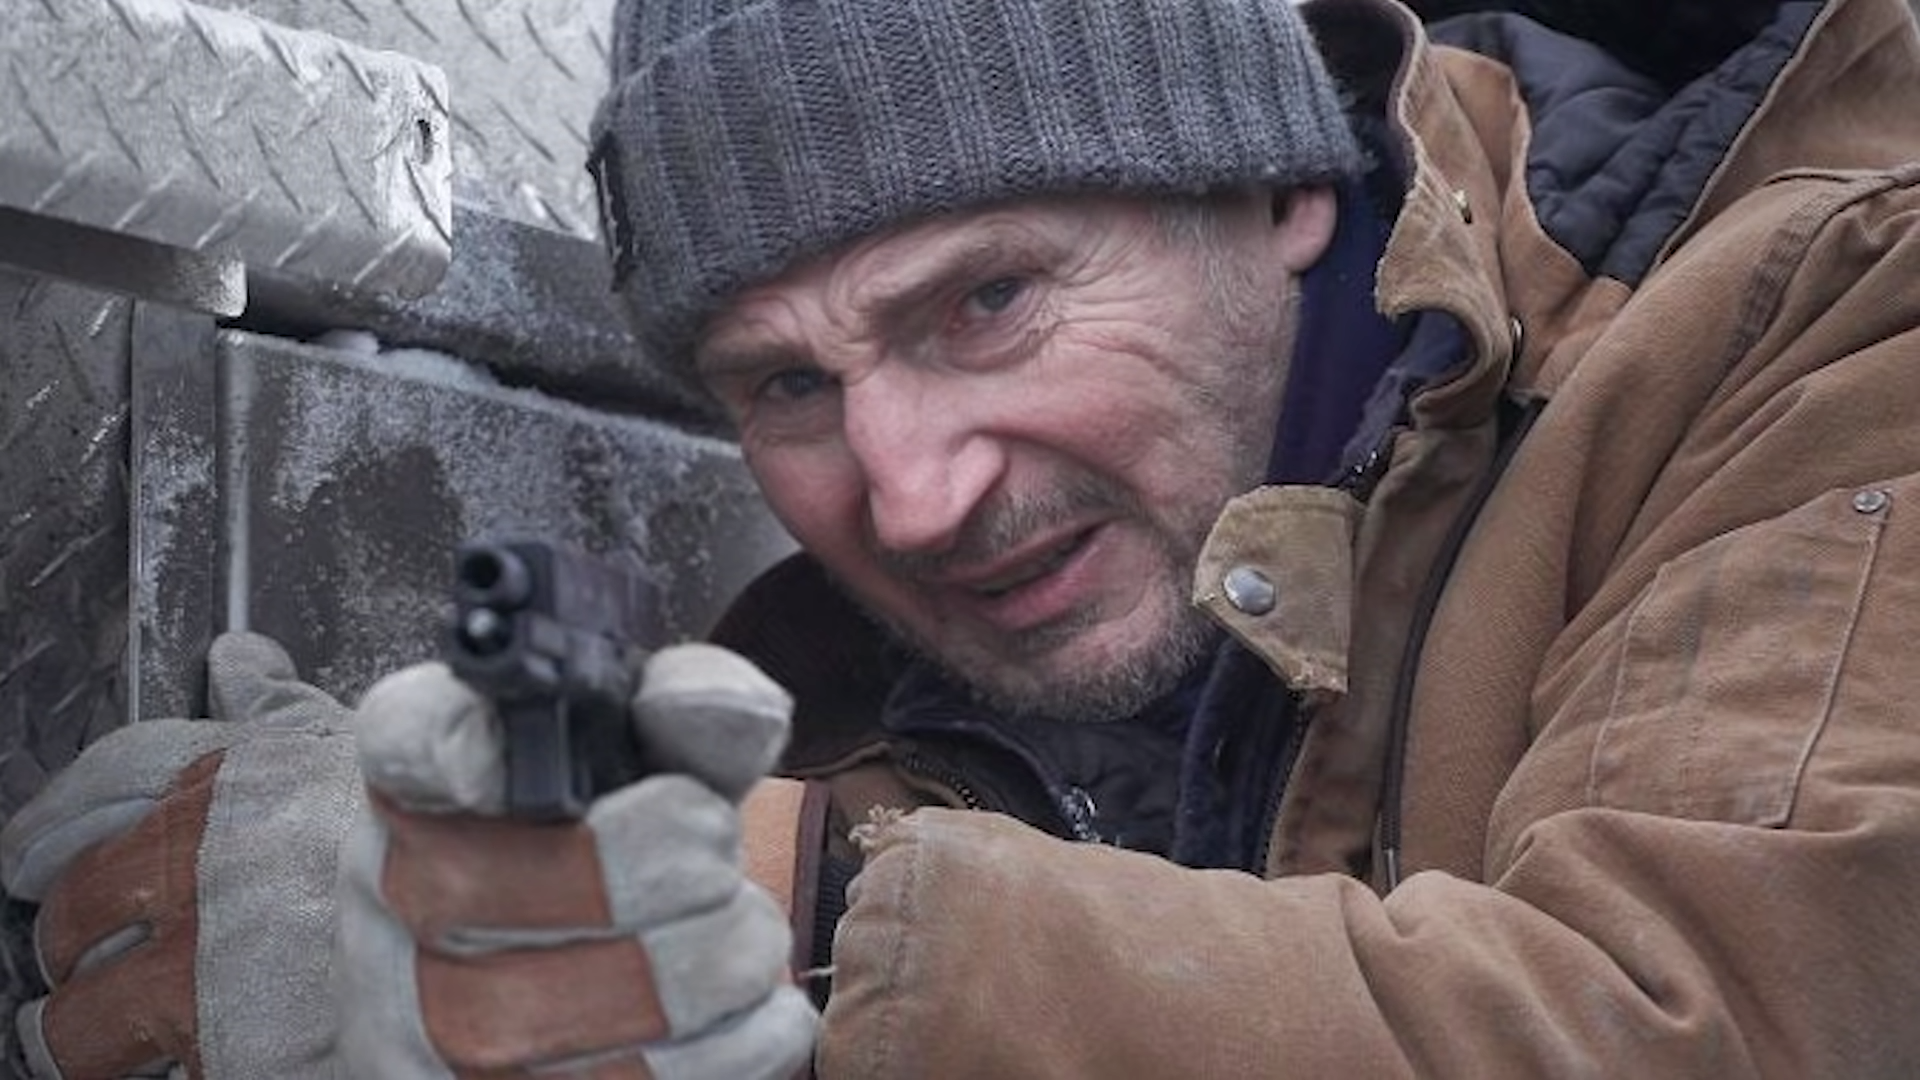 Una misión peligrosa y emocionante: Entrevista con Liam Neeson y Lawrence Fisburne por 'Riesgo bajo cero'